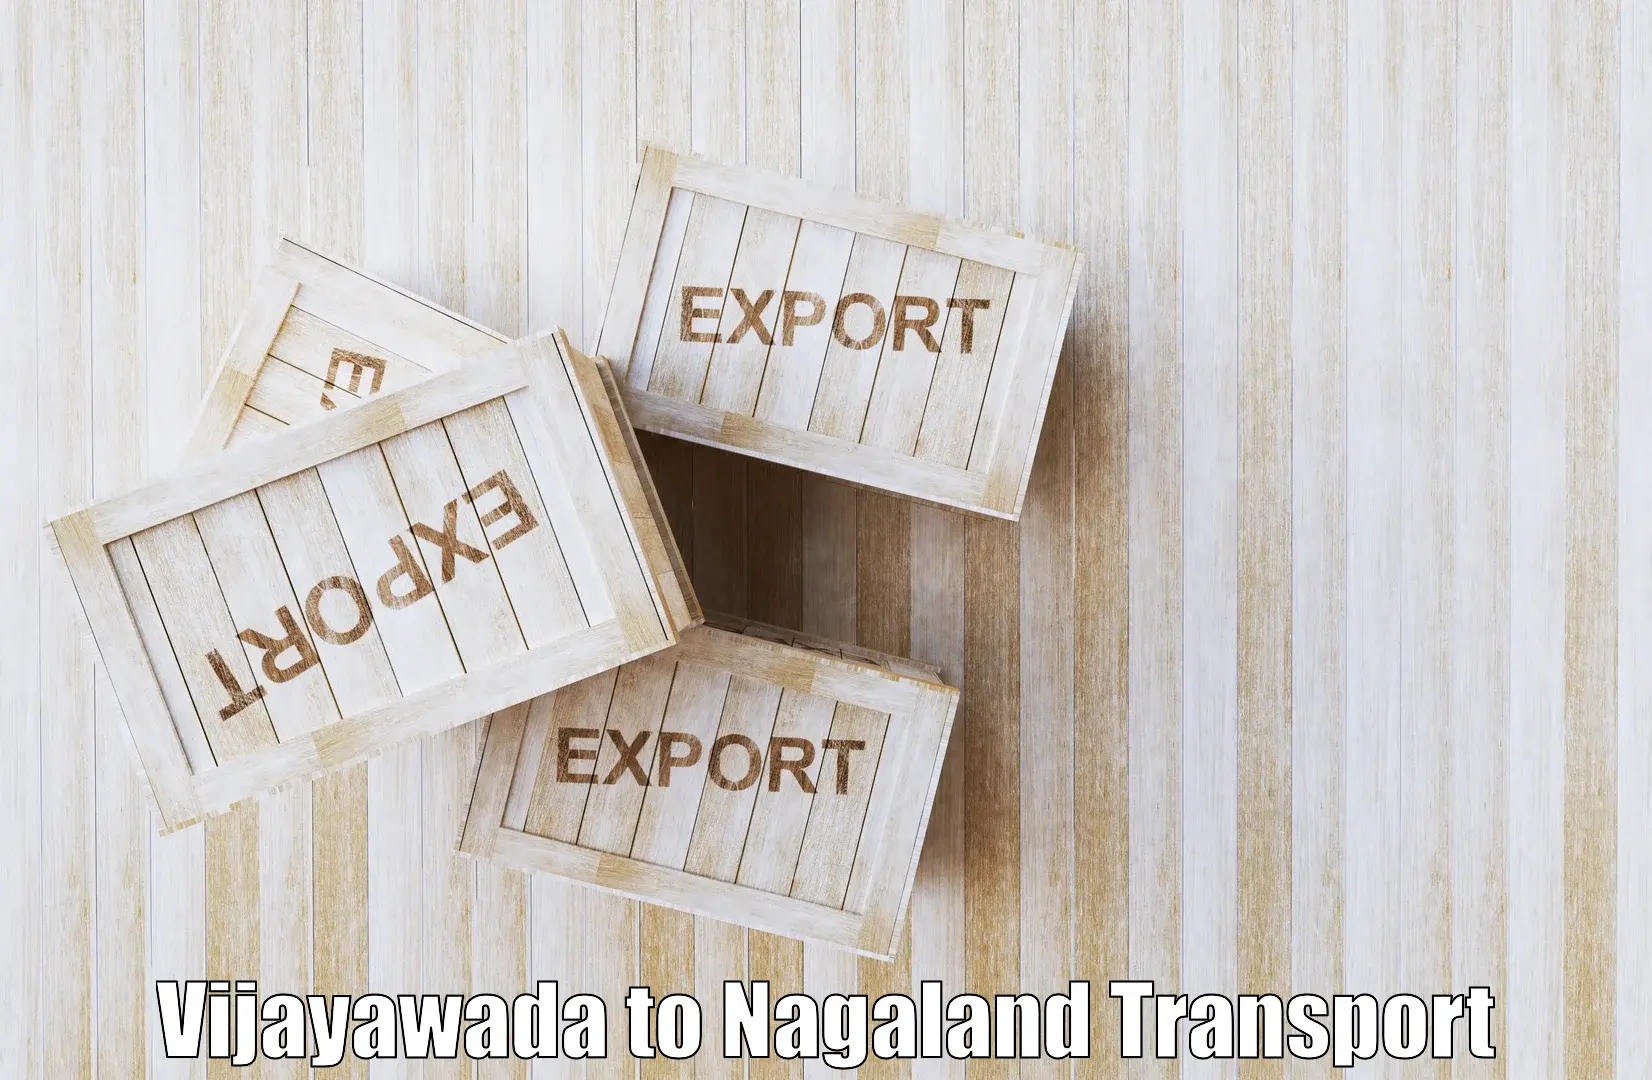 Daily transport service Vijayawada to NIT Nagaland